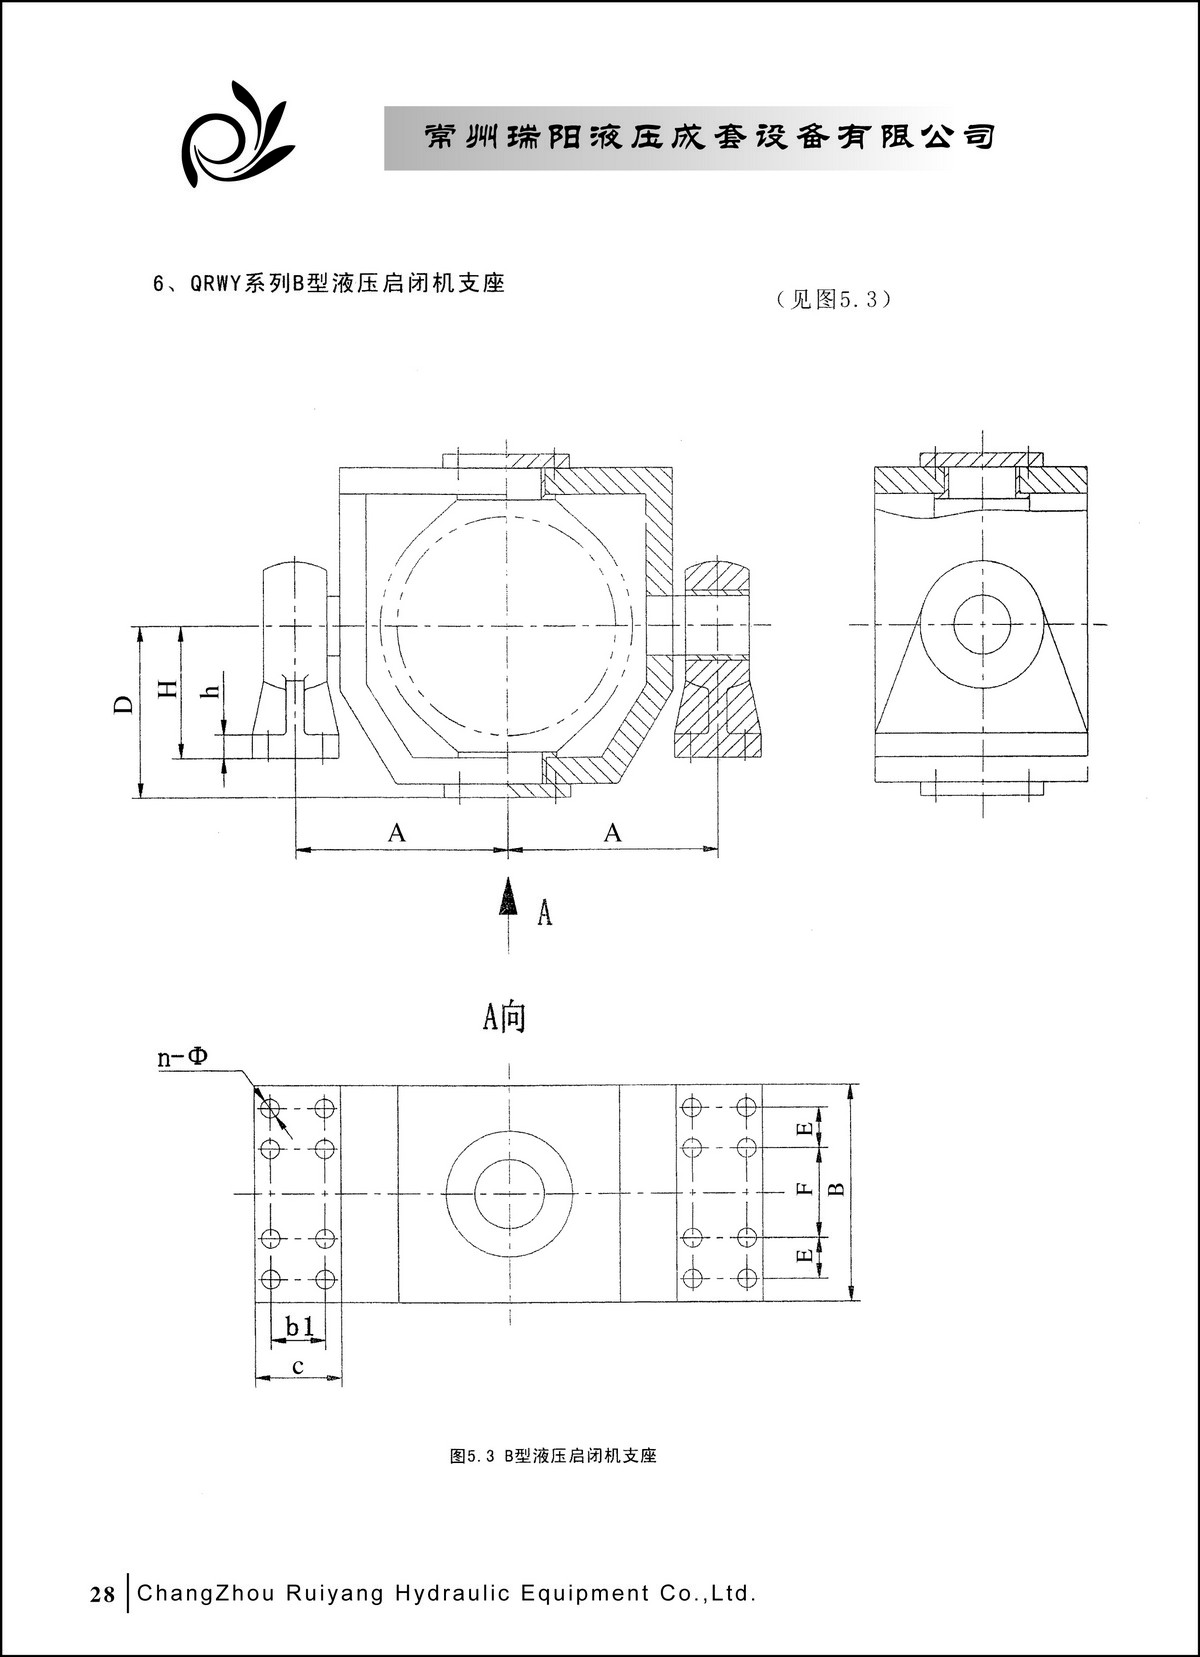 常州瑞阳液压成套设备有限公司产品样本2_页面_28.JPG